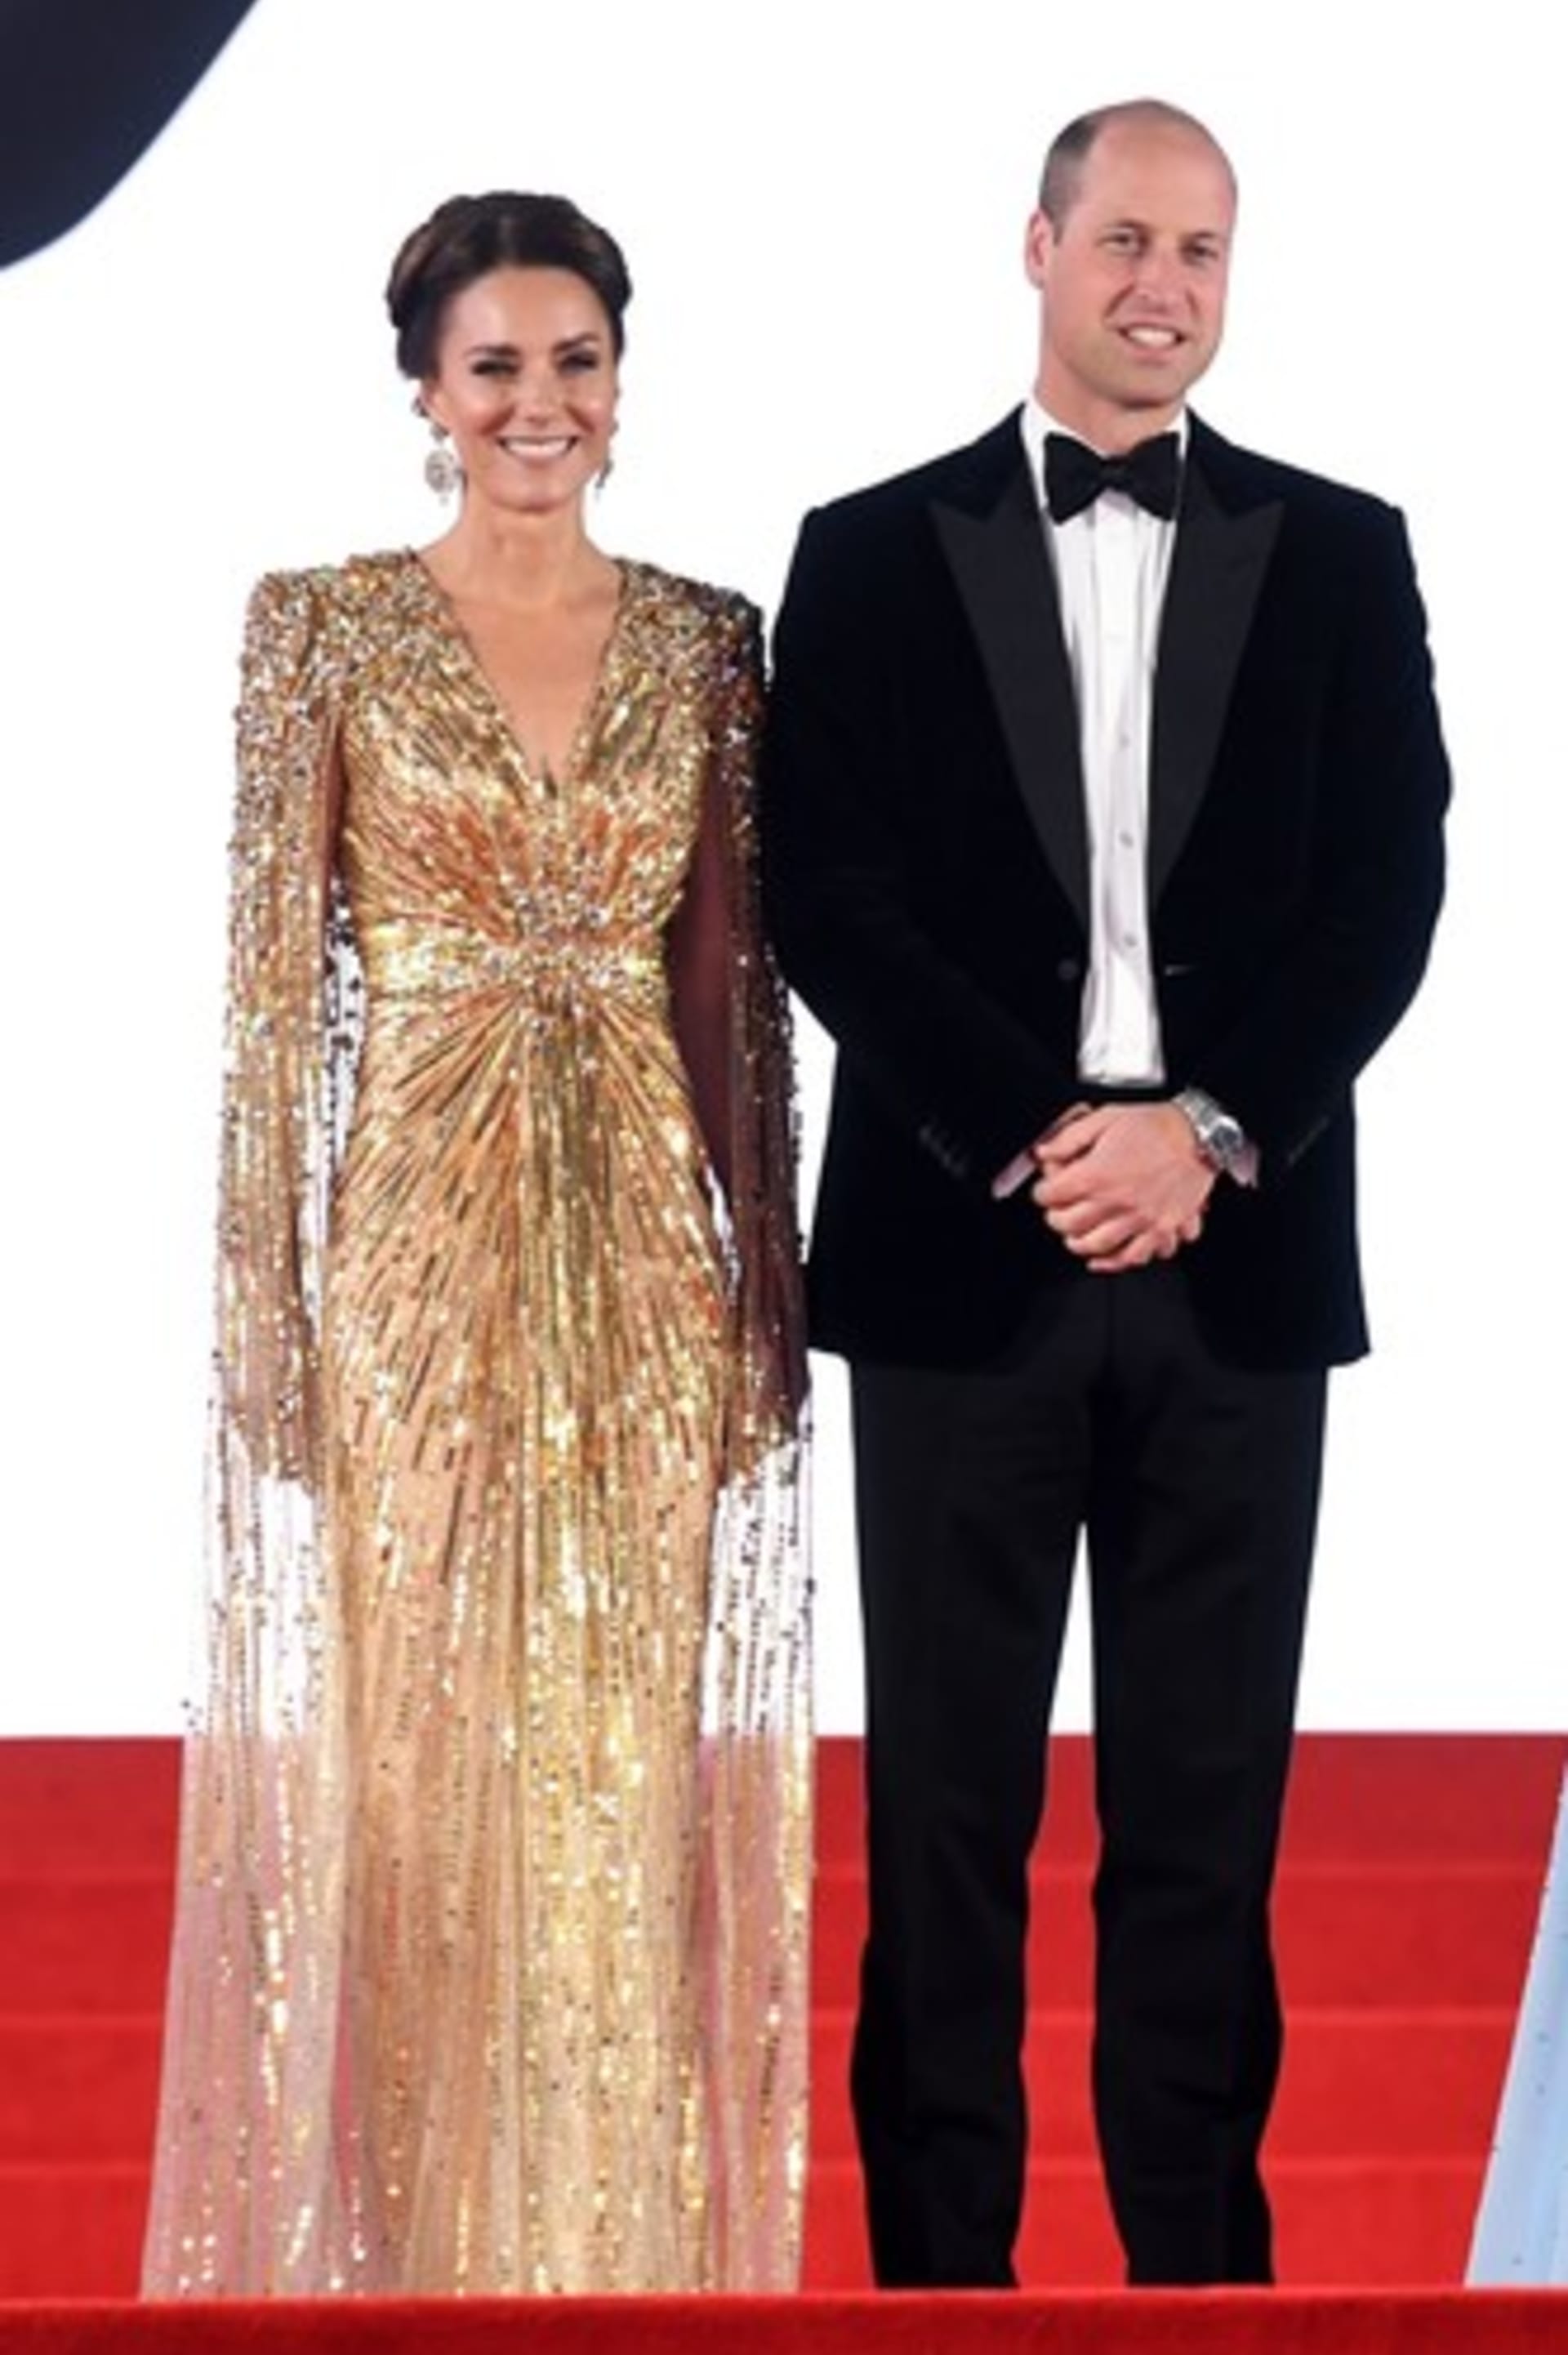 Vévodkyně Kate s princem Williamem na premiéře bondovky Není čas zemřít